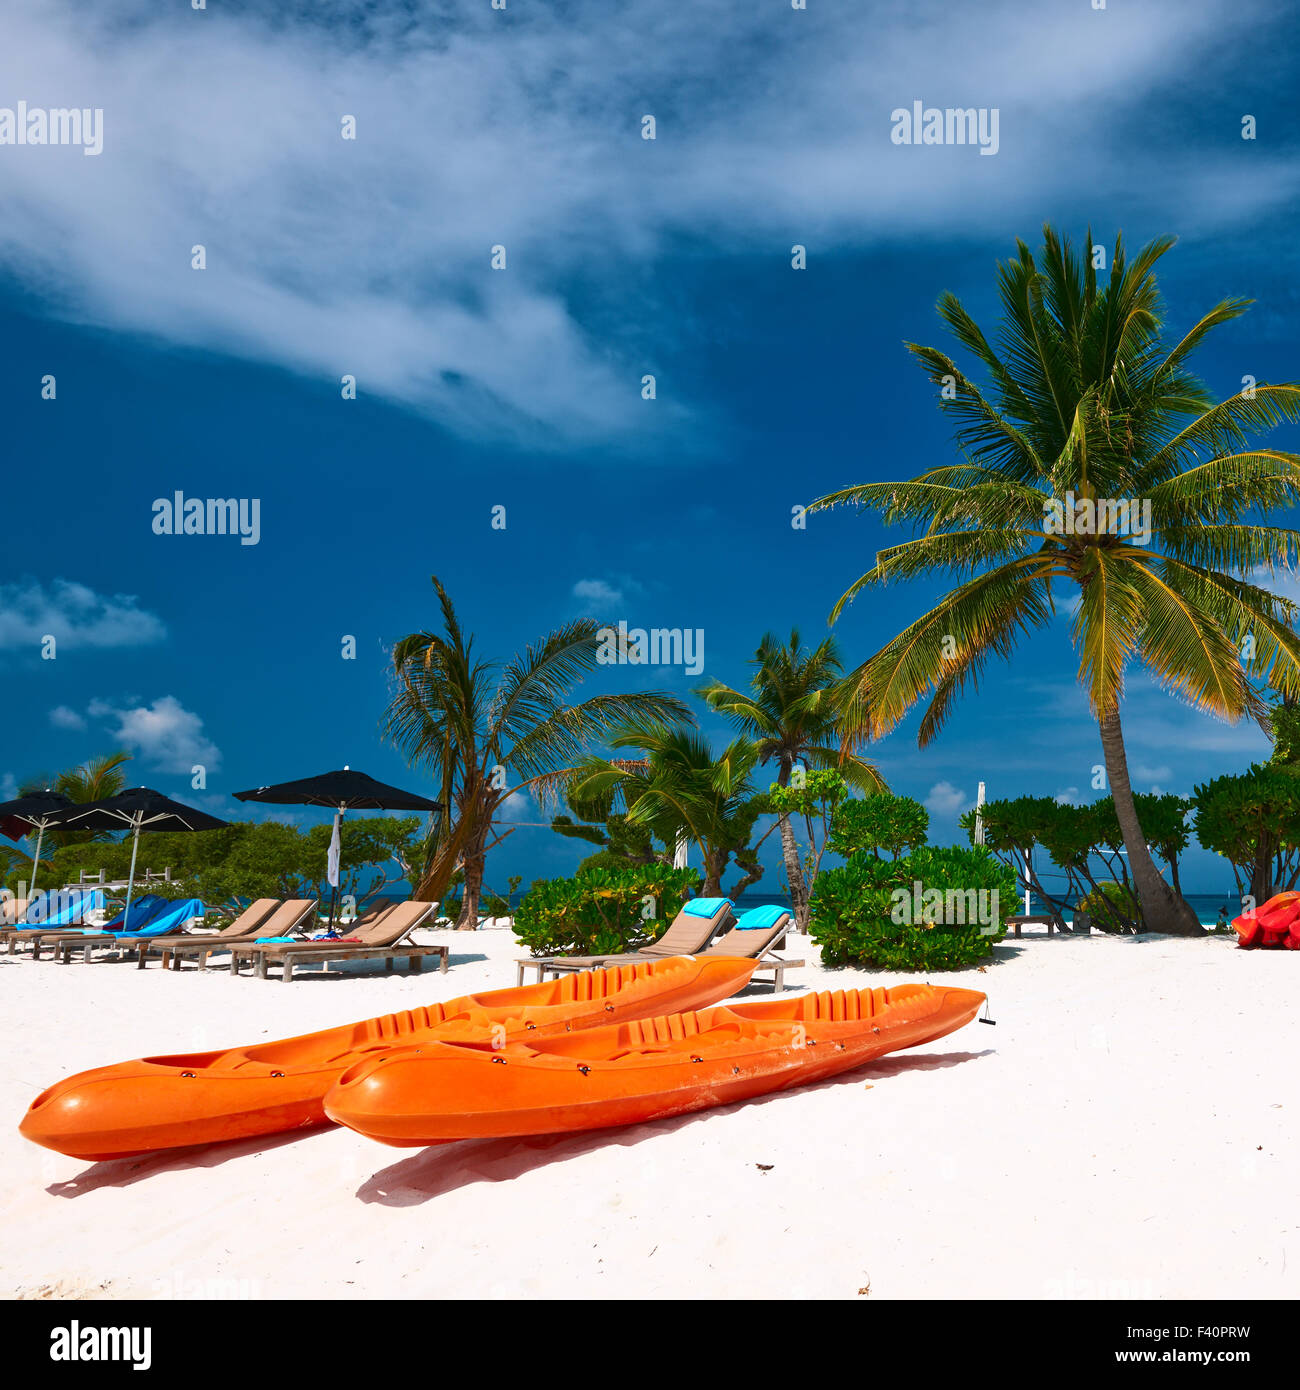 Beautiful beach Maldives Stock Photo